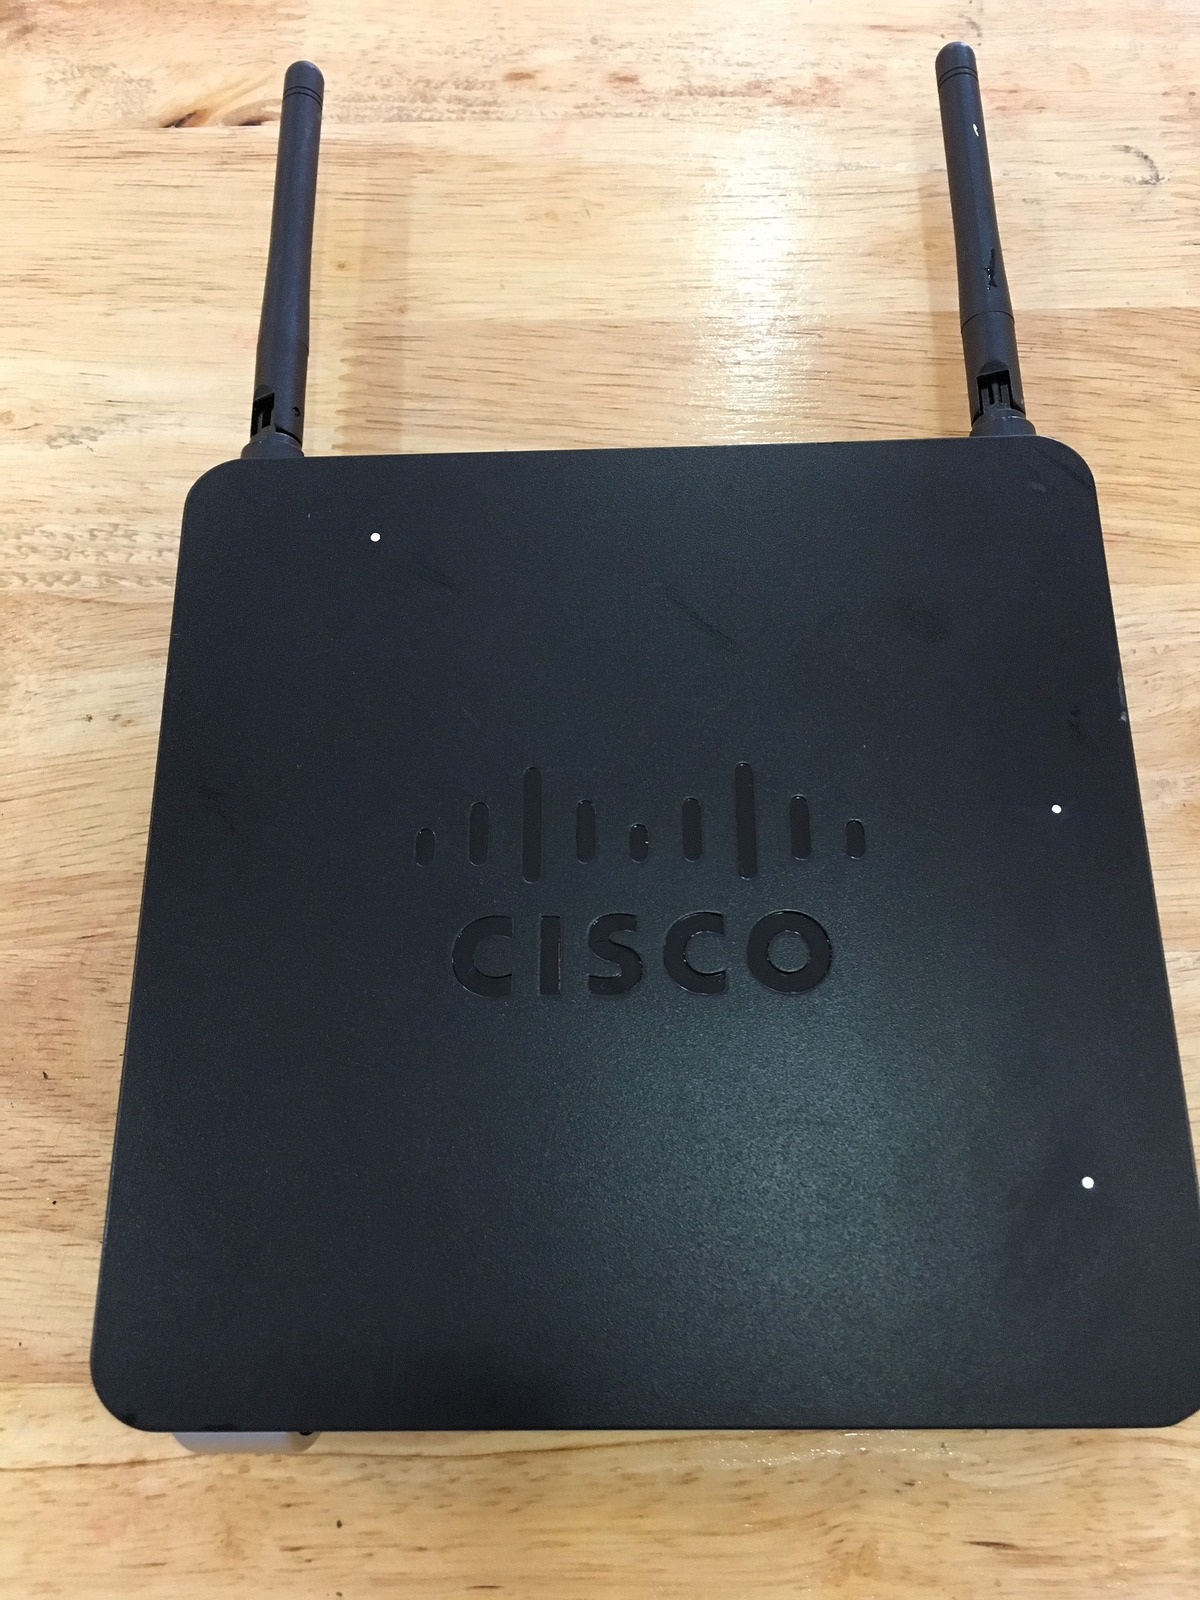 Thanh lý các thiết bị đồ dùng linh tinh ( Cisco , TP link 841N ,..) - 3